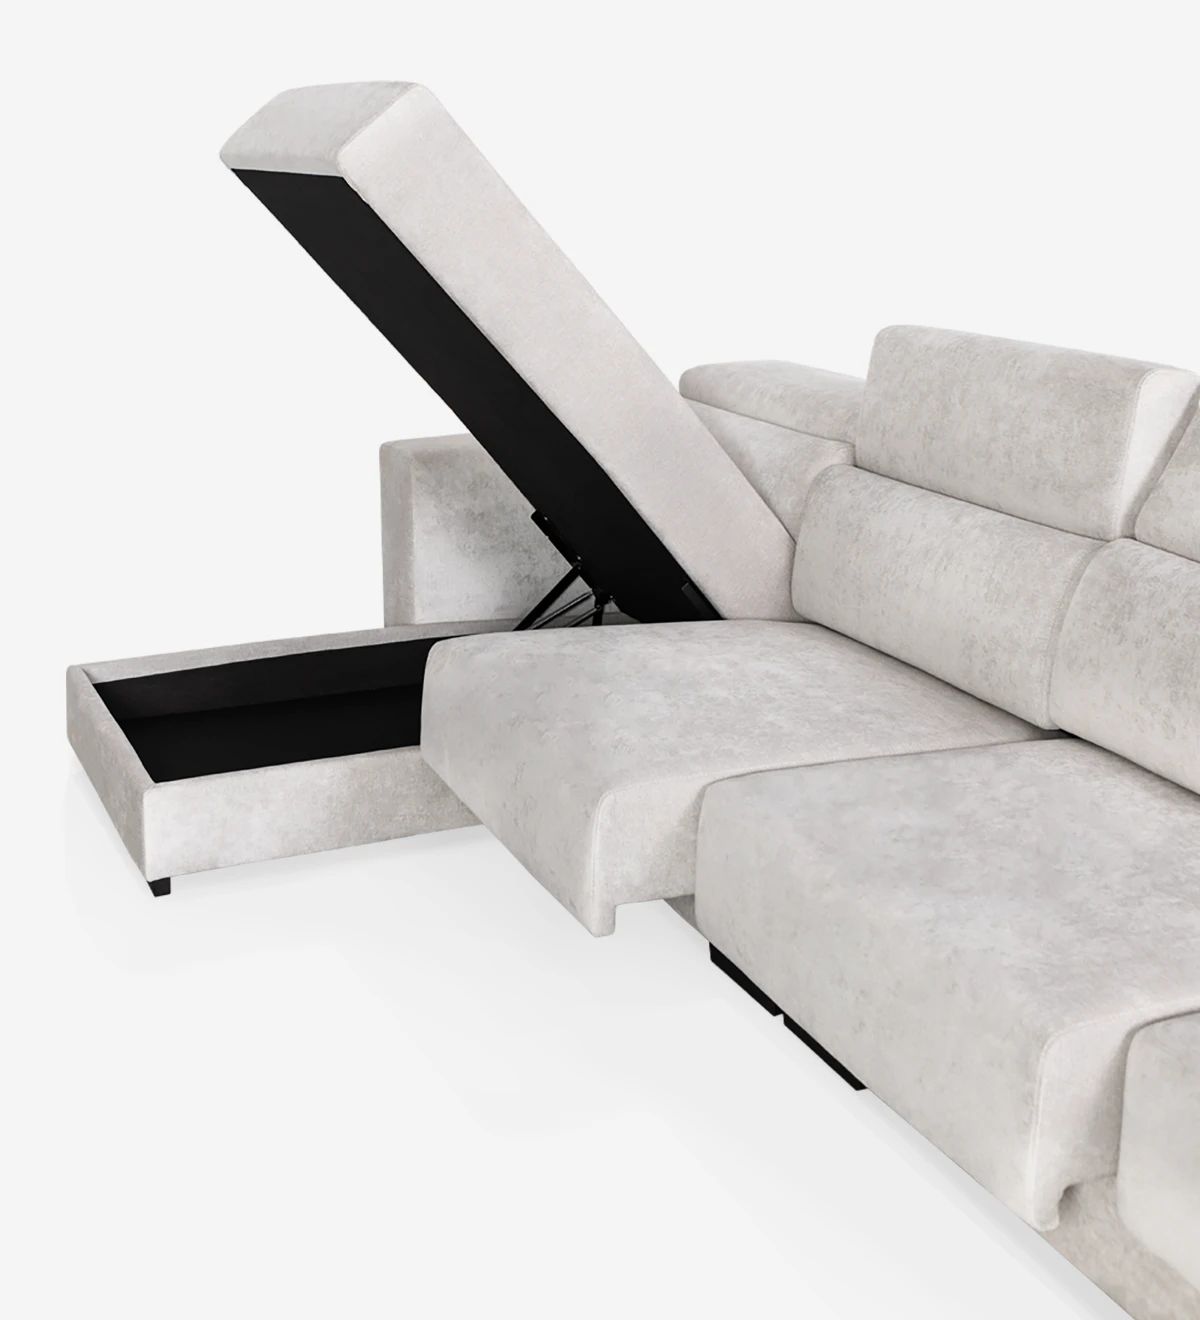 Sofá de 3 plazas con chaise longue, tapizado en tejido, con reposacabezas reclinables y asientos deslizantes.